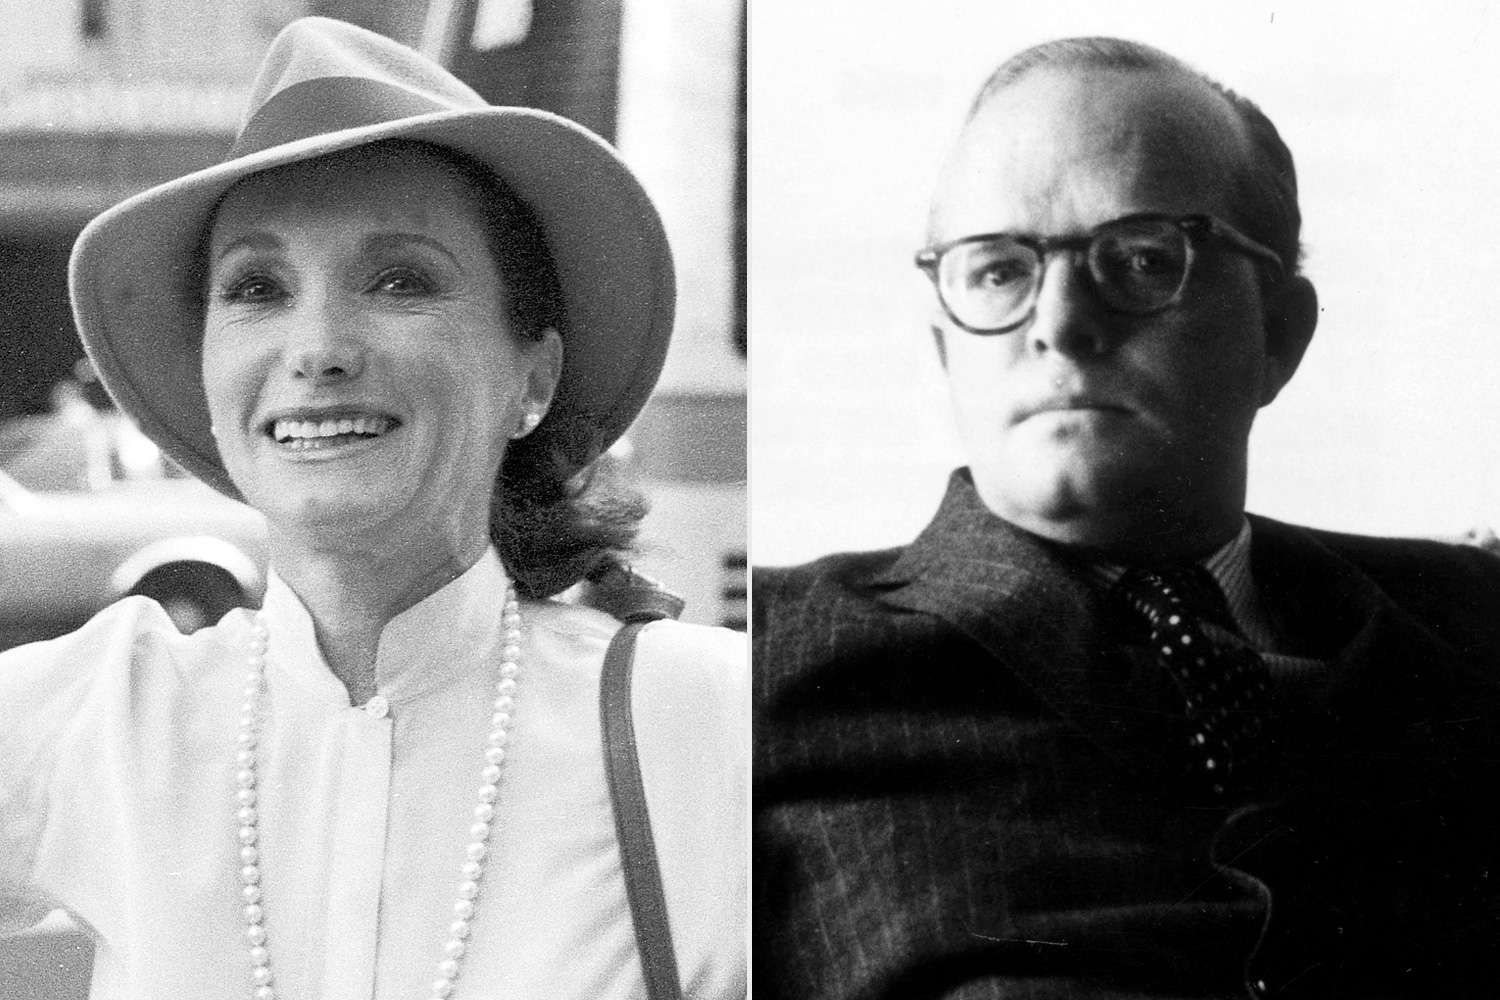 Mối liên hệ kỳ lạ giữa Kennedy với tro tàn của Truman Capote: Từ cú va chạm trong lễ hội Halloween ở Bel Air đến Lời kêu gọi của Marilyn Monroe